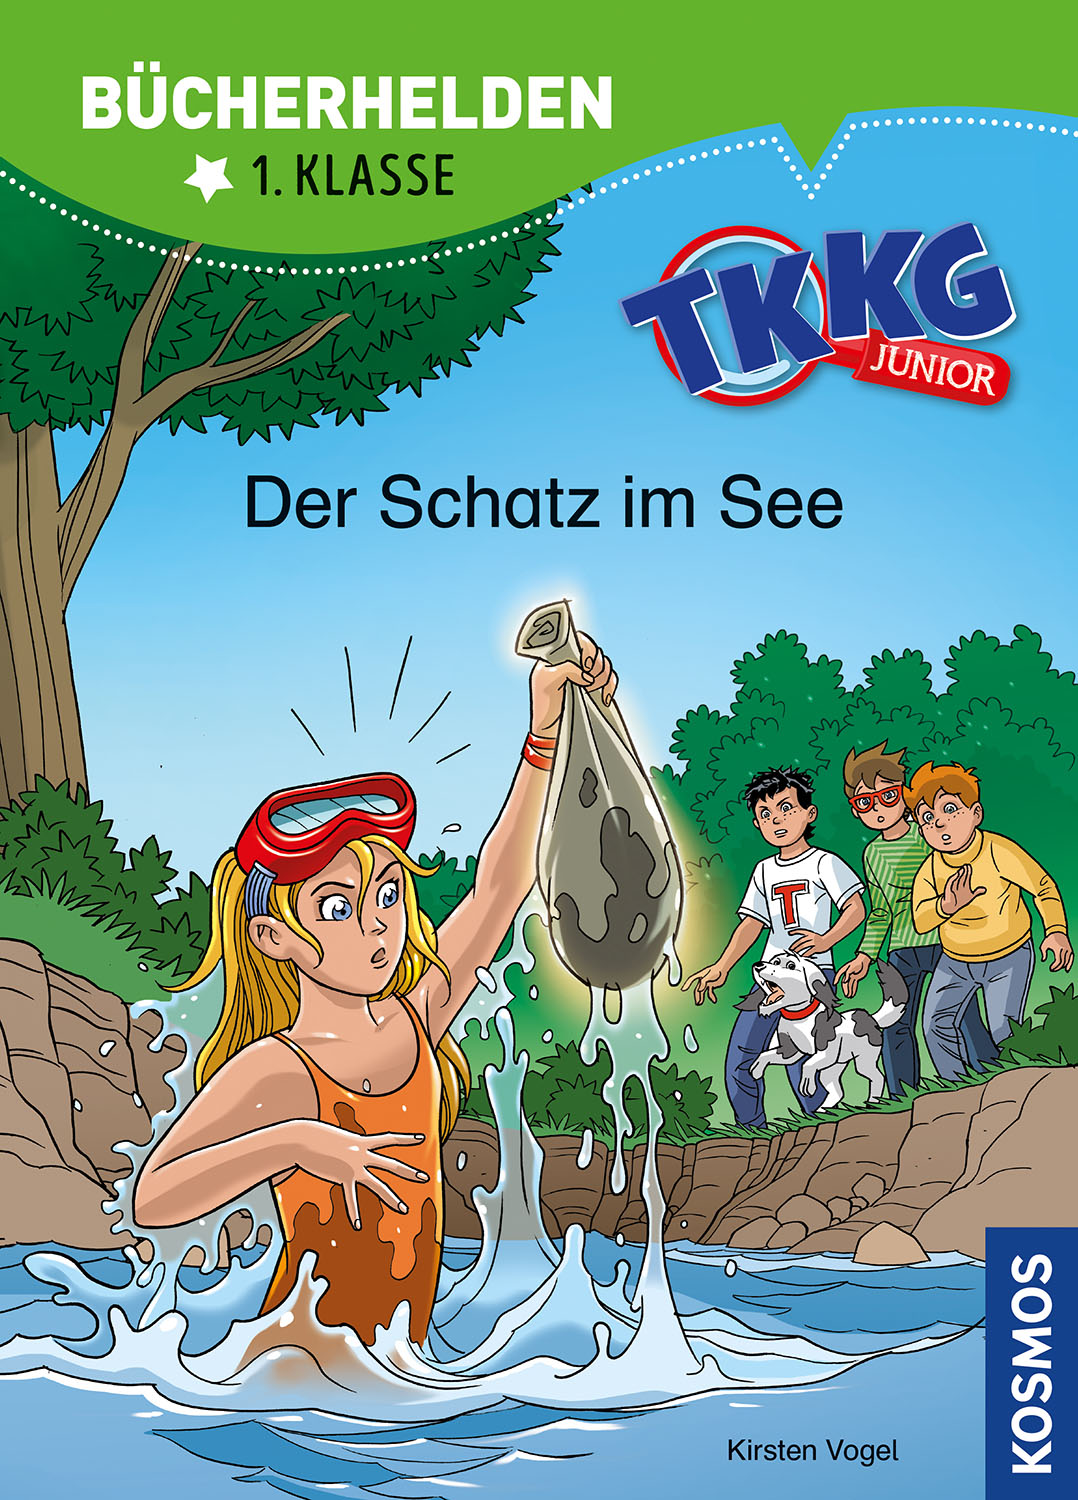 TKKG Junior Buch, Band 15: Der Schatz im See